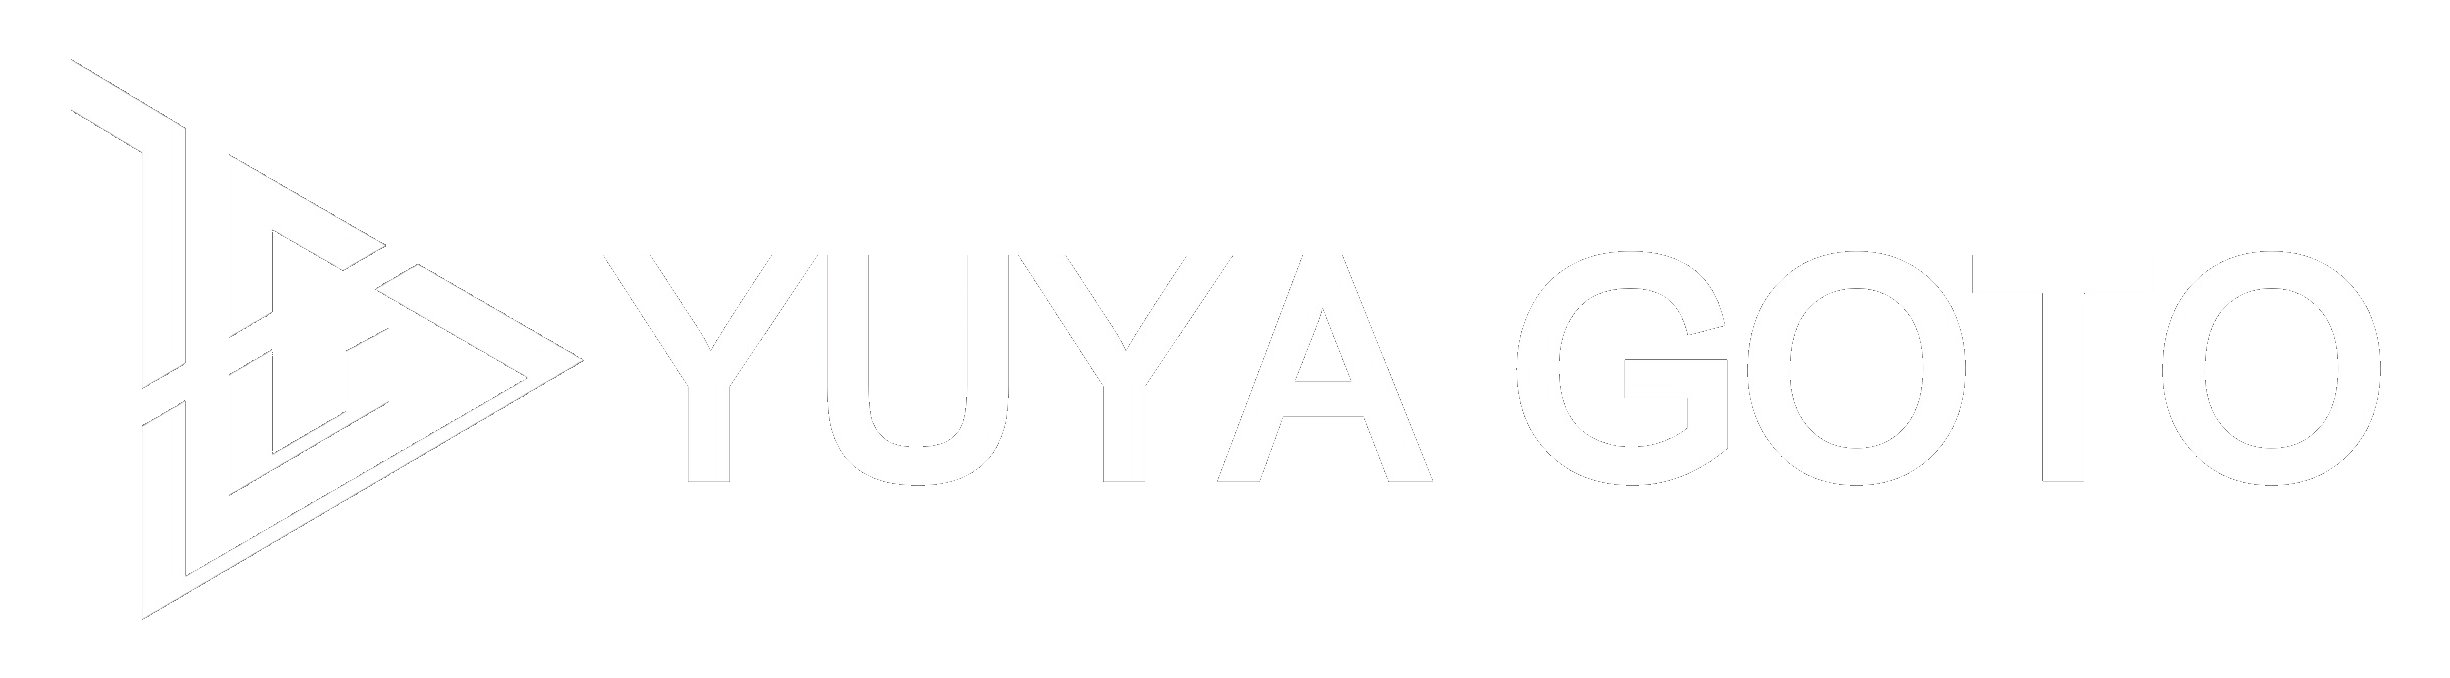 YUYA GOTO Official Website